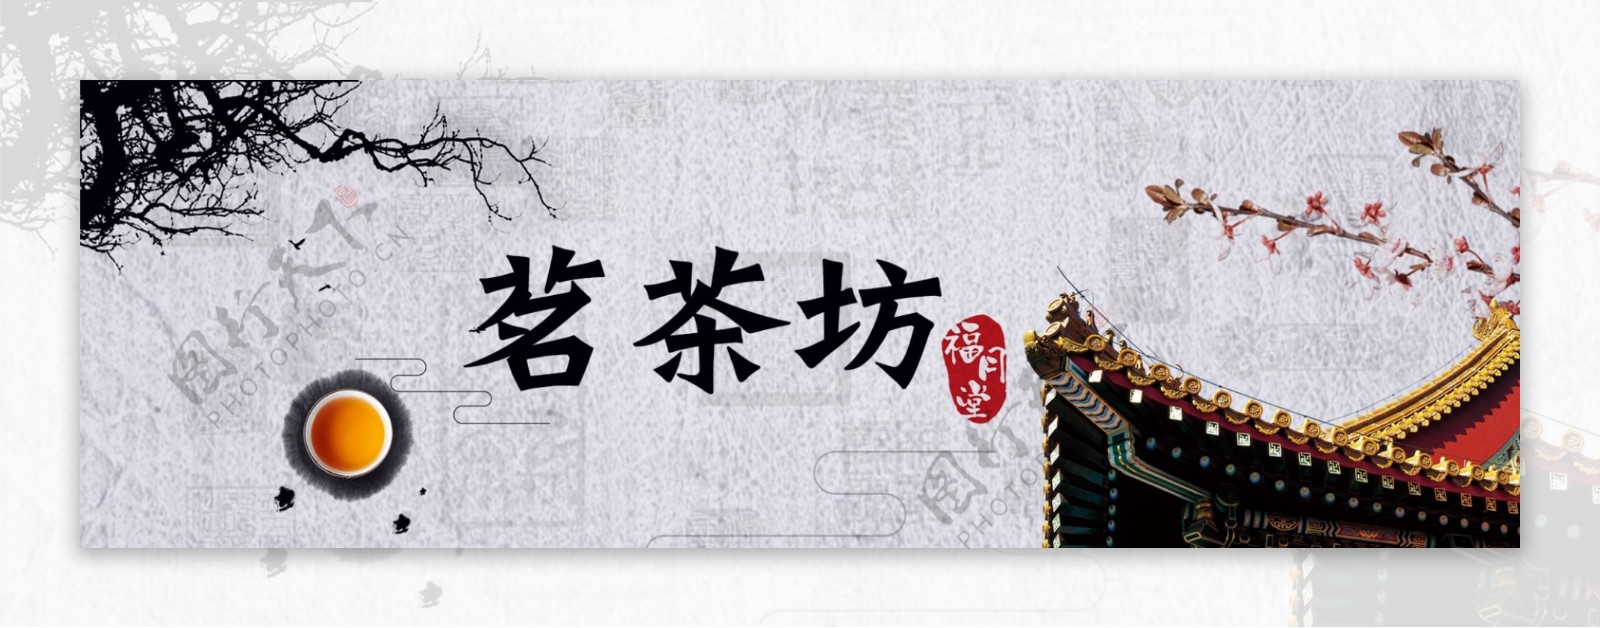 古典中国风屋檐茶海报